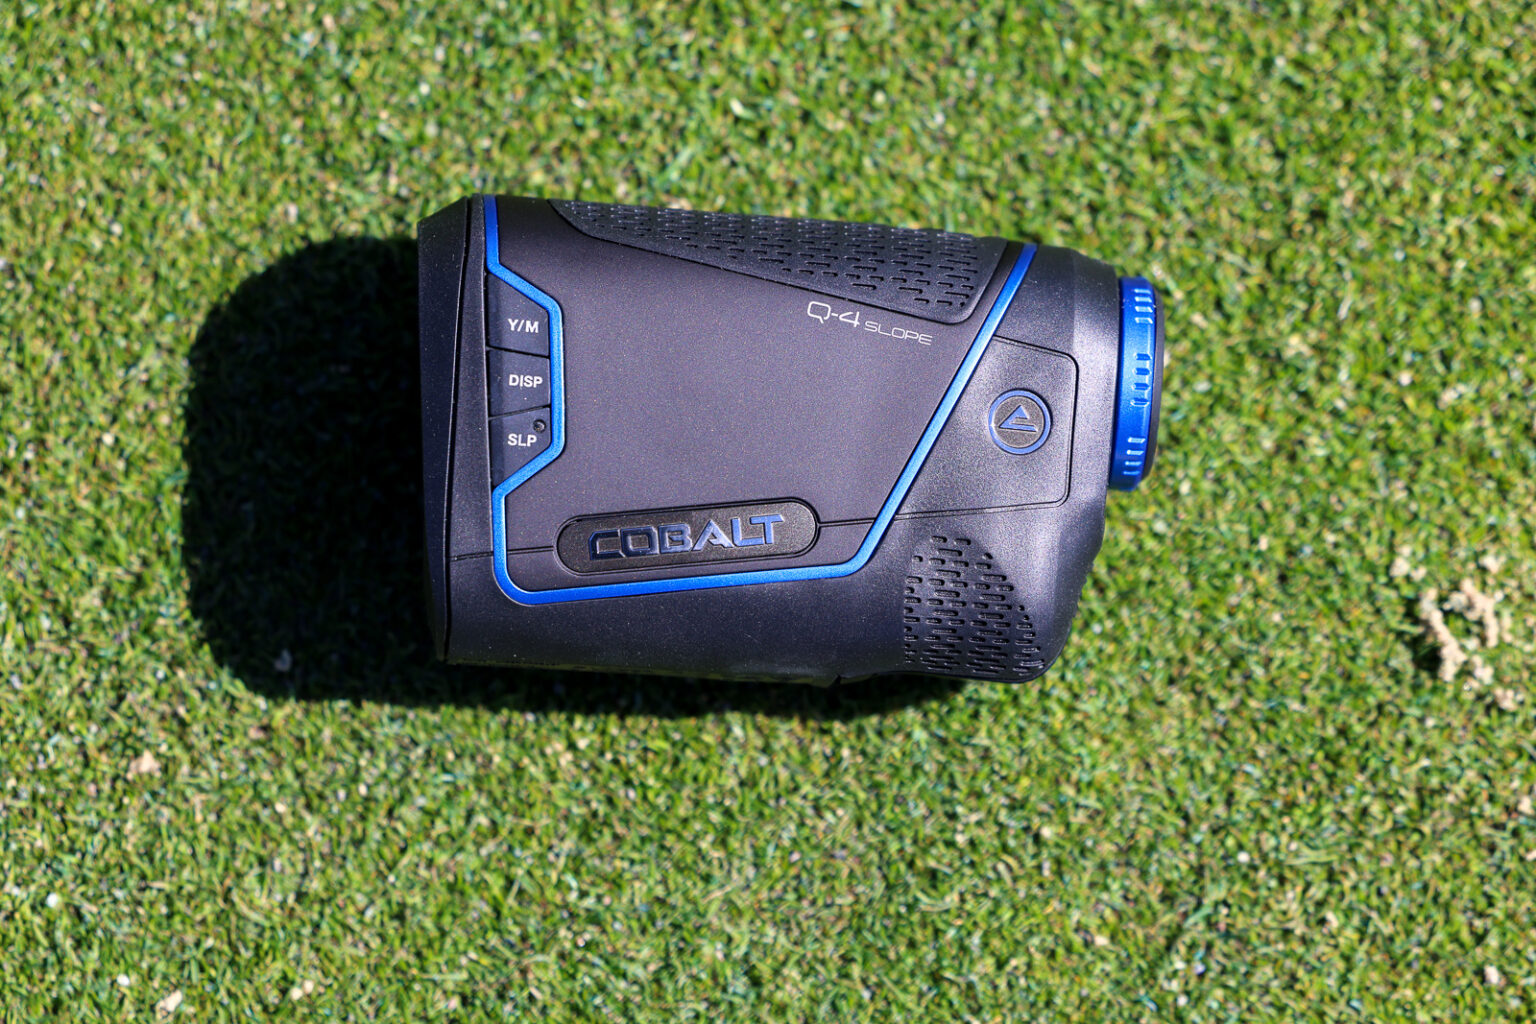 Cobalt Q-4 Slope Golf Rangefinder